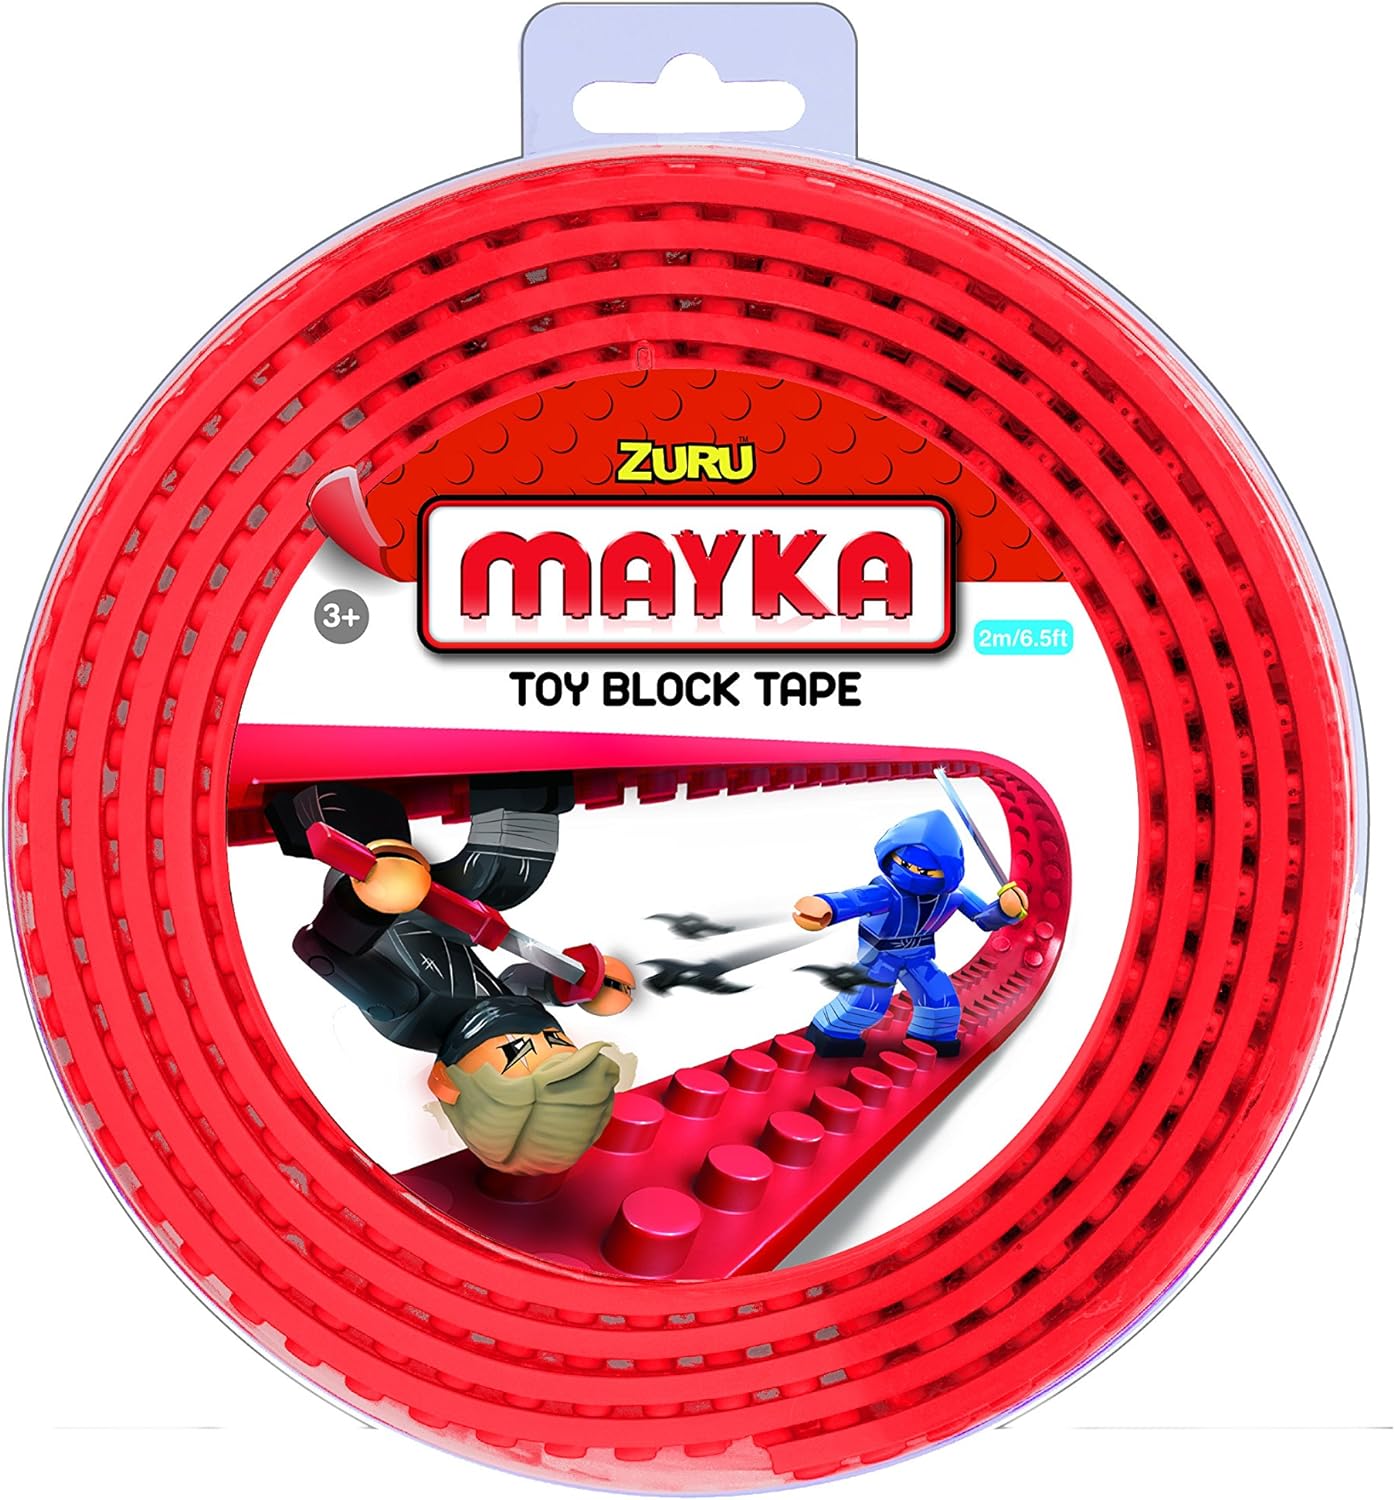 Mayka Toy Block Tape Red 1m